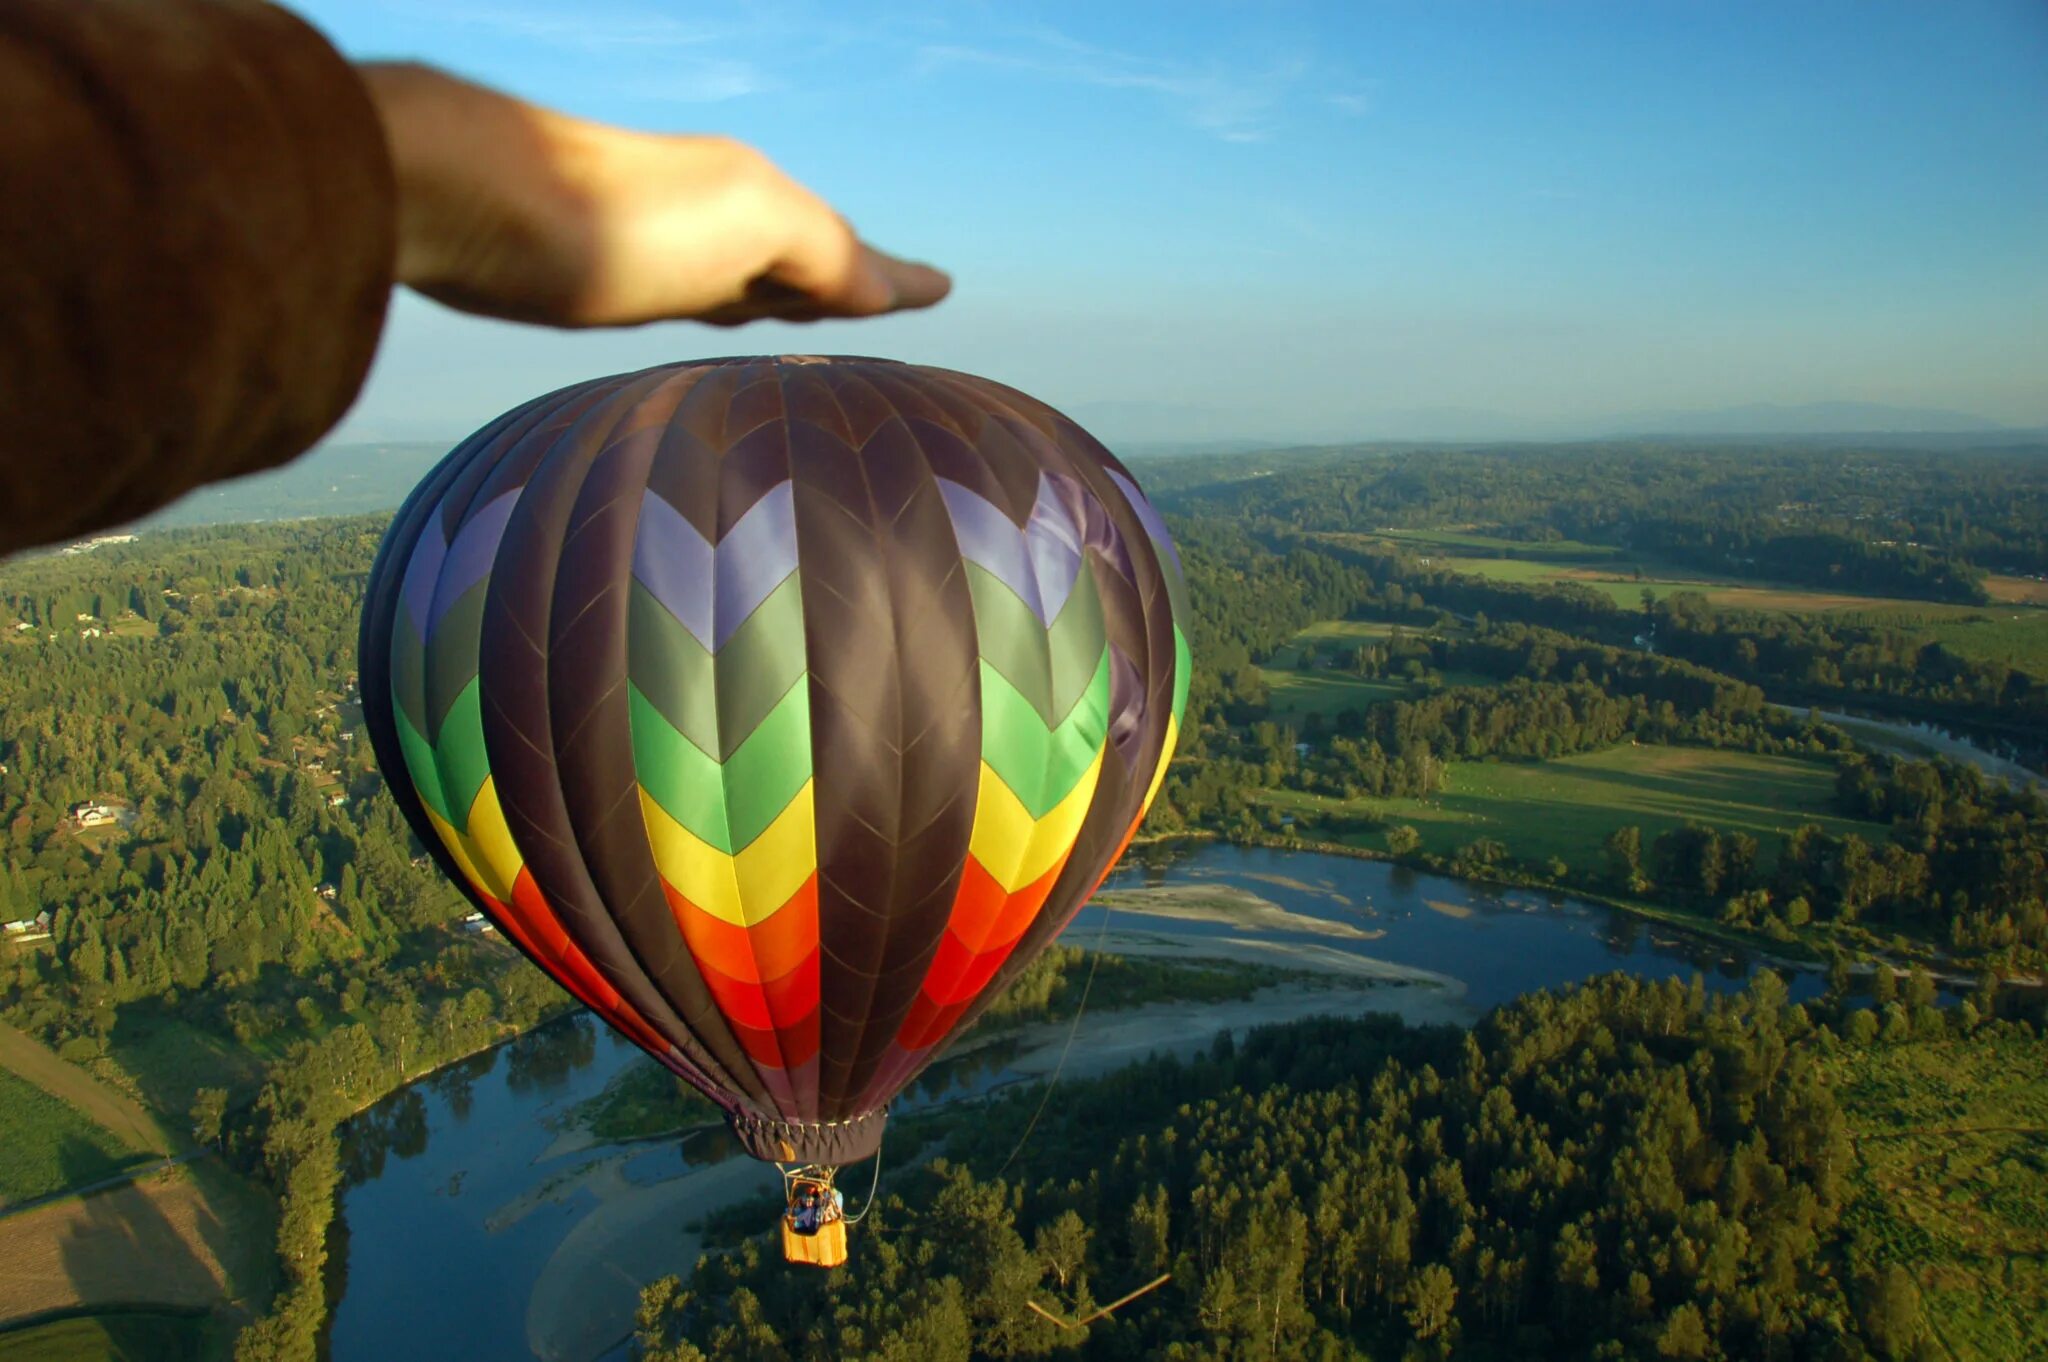 Проект на шаре. Vozdushnyye shar. На воздушном шаре. Вид с воздушного шара. Воздушные шары летательные.